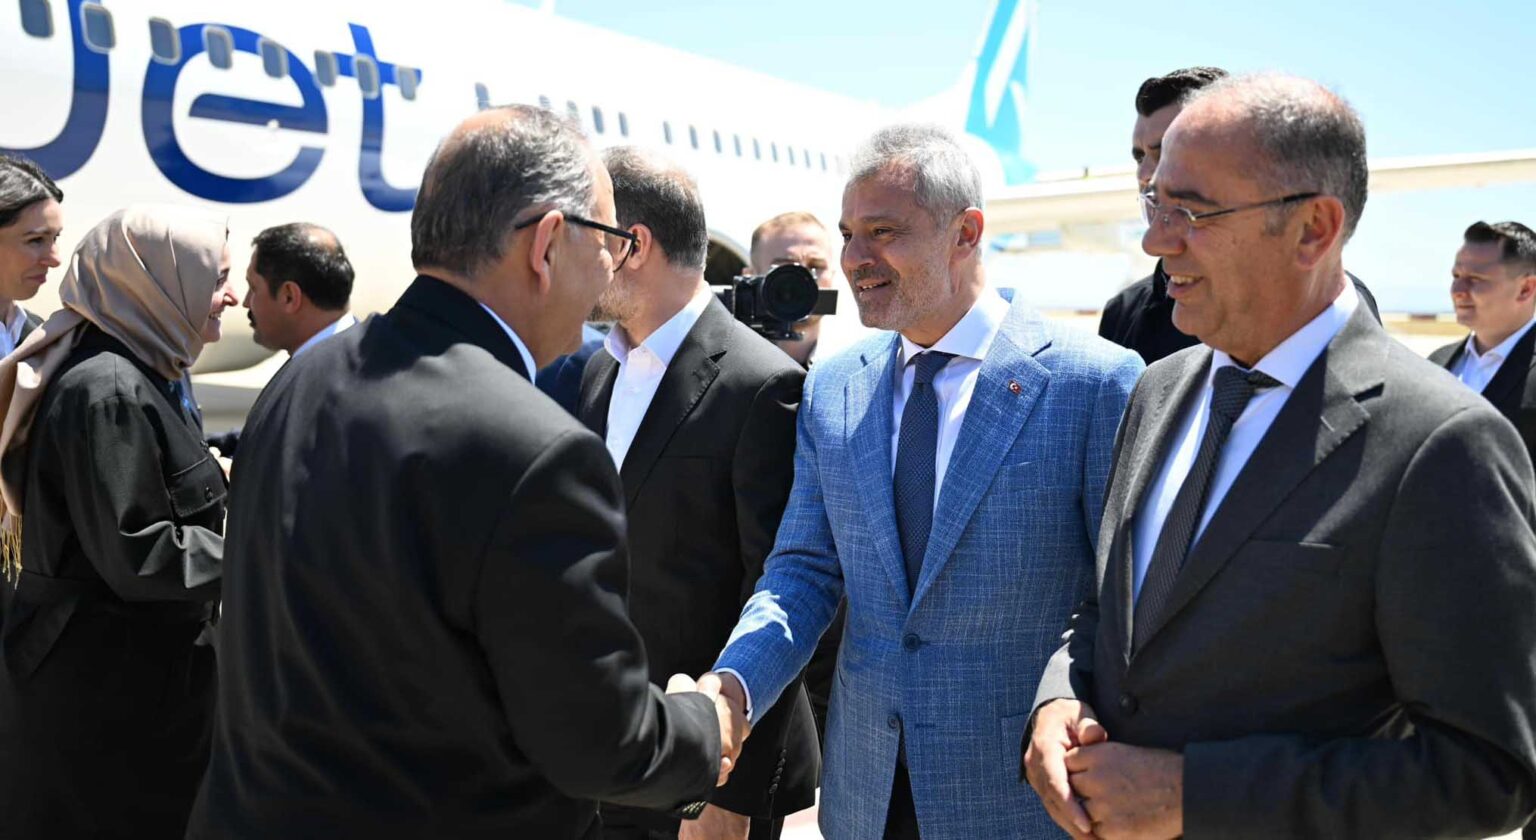 Çevre, Şehircilik ve İklim Değişikliği Bakanı Mehmet Özhaseki, Hatay'a gerçekleştirdiği ziyarette deprem sonrası şehrin yeniden yapılandırılması için yürütülen inşa çalışmalarını denetledi.